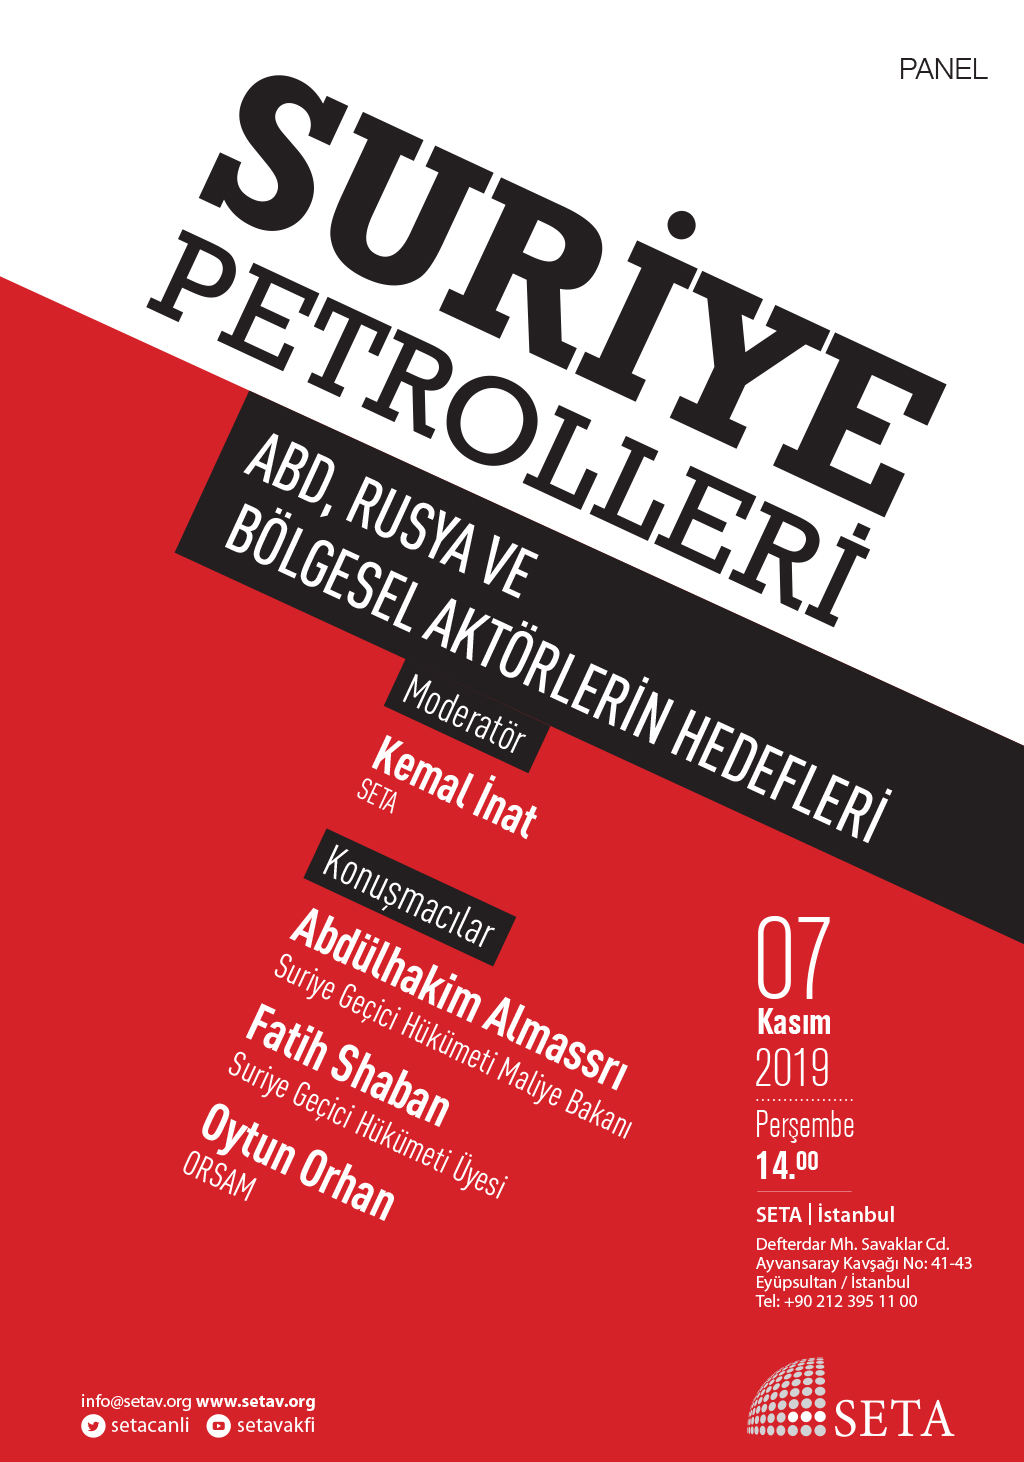 Panel: Suriye Petrolleri | ABD, Rusya ve Bölgesel Aktörlerin Hedefleri